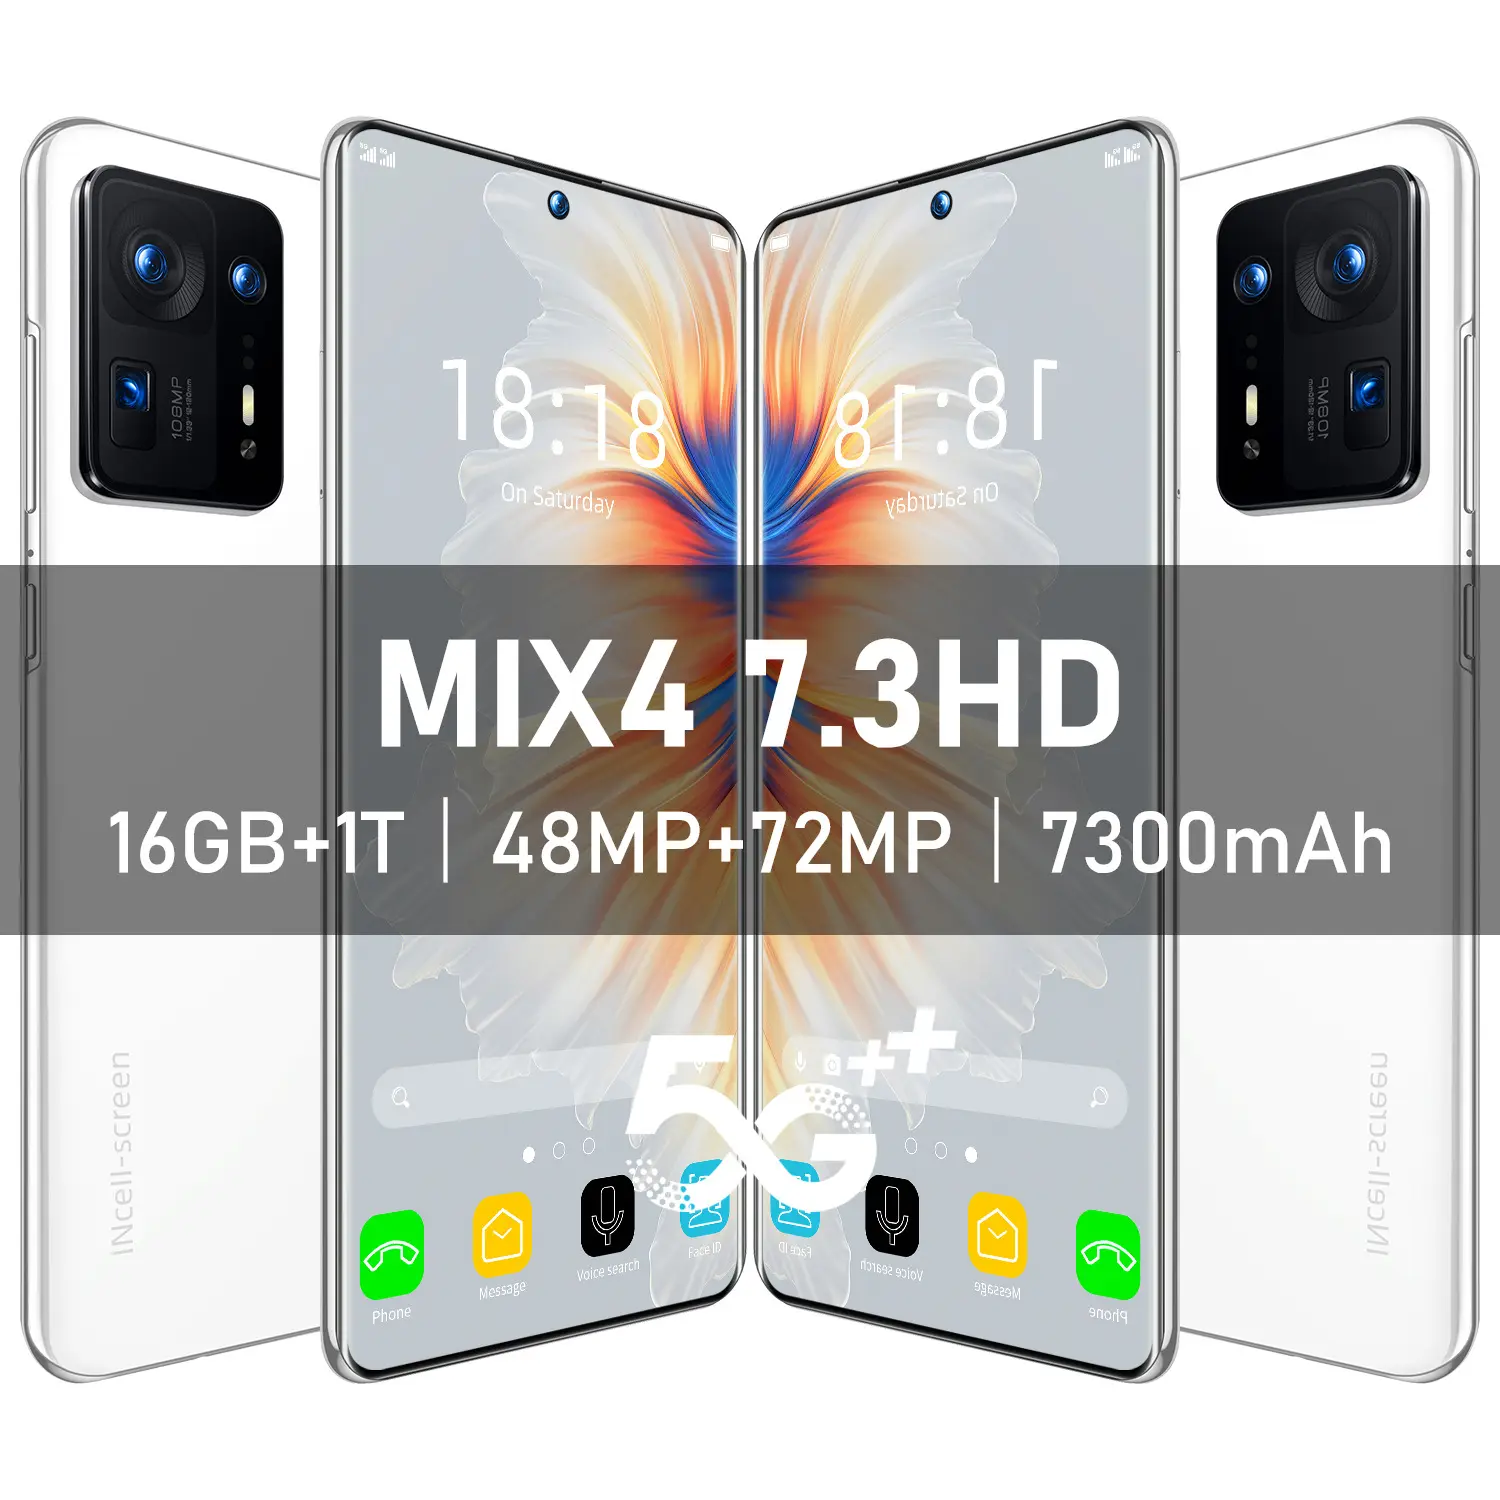 هاتف محمول MIX4 منخفض السعر متعدد الجهات 7.3 بوصة بتقنية التفريغ الحقيقي وشاشة كبيرة عالية الوضوح بنظام تشغيل أندرويد 8.1 تم بيعه بمستوى دقة 8 ملايين بيكسل